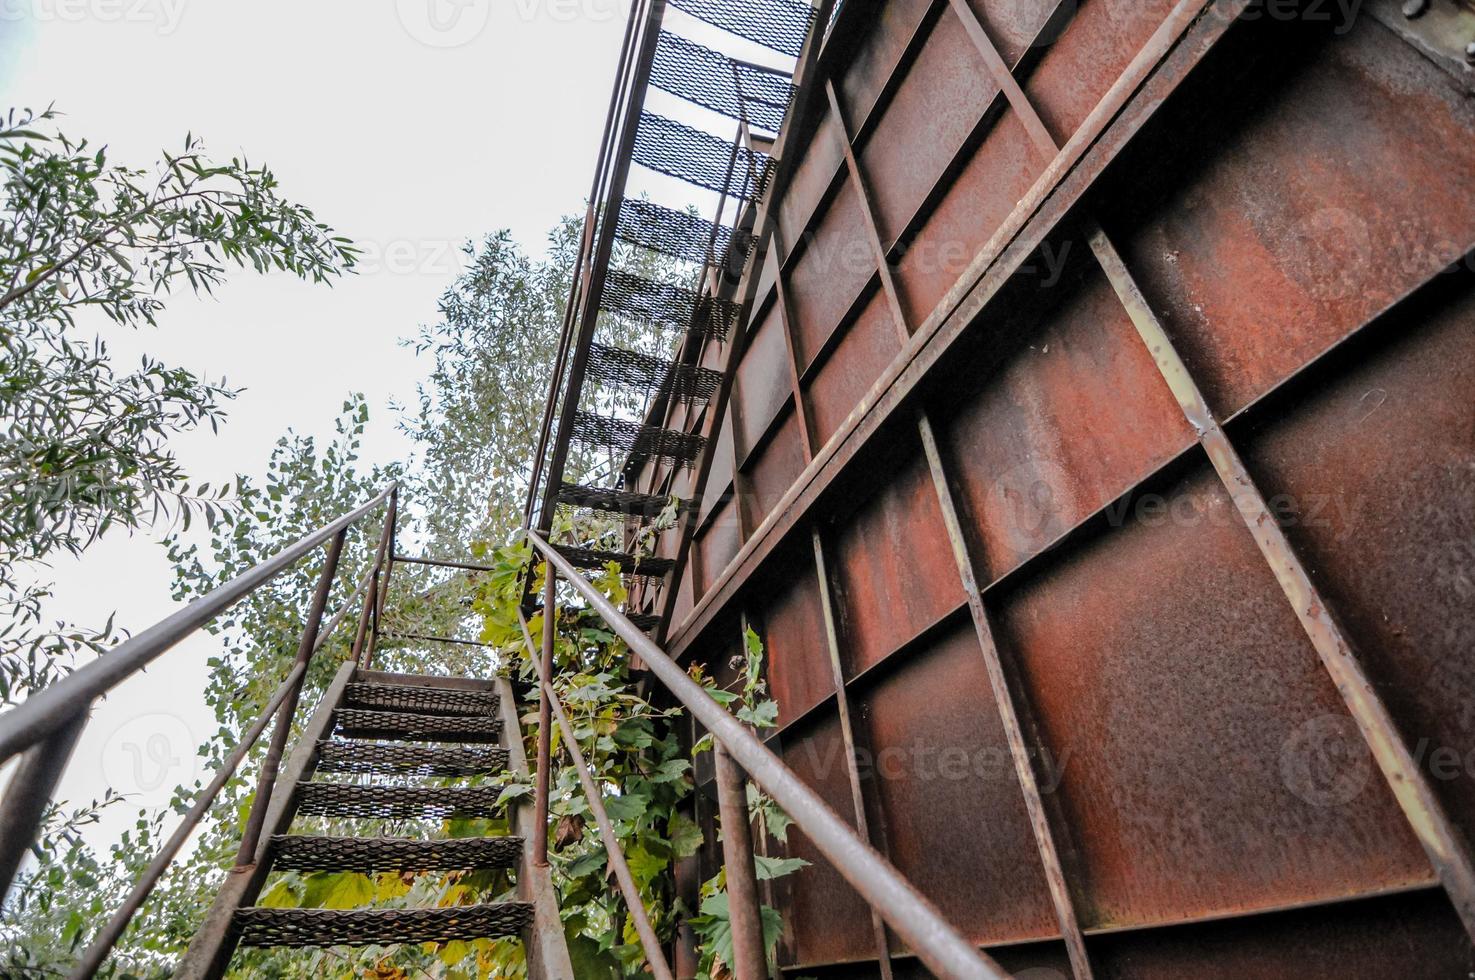 vista de escadas de metal foto